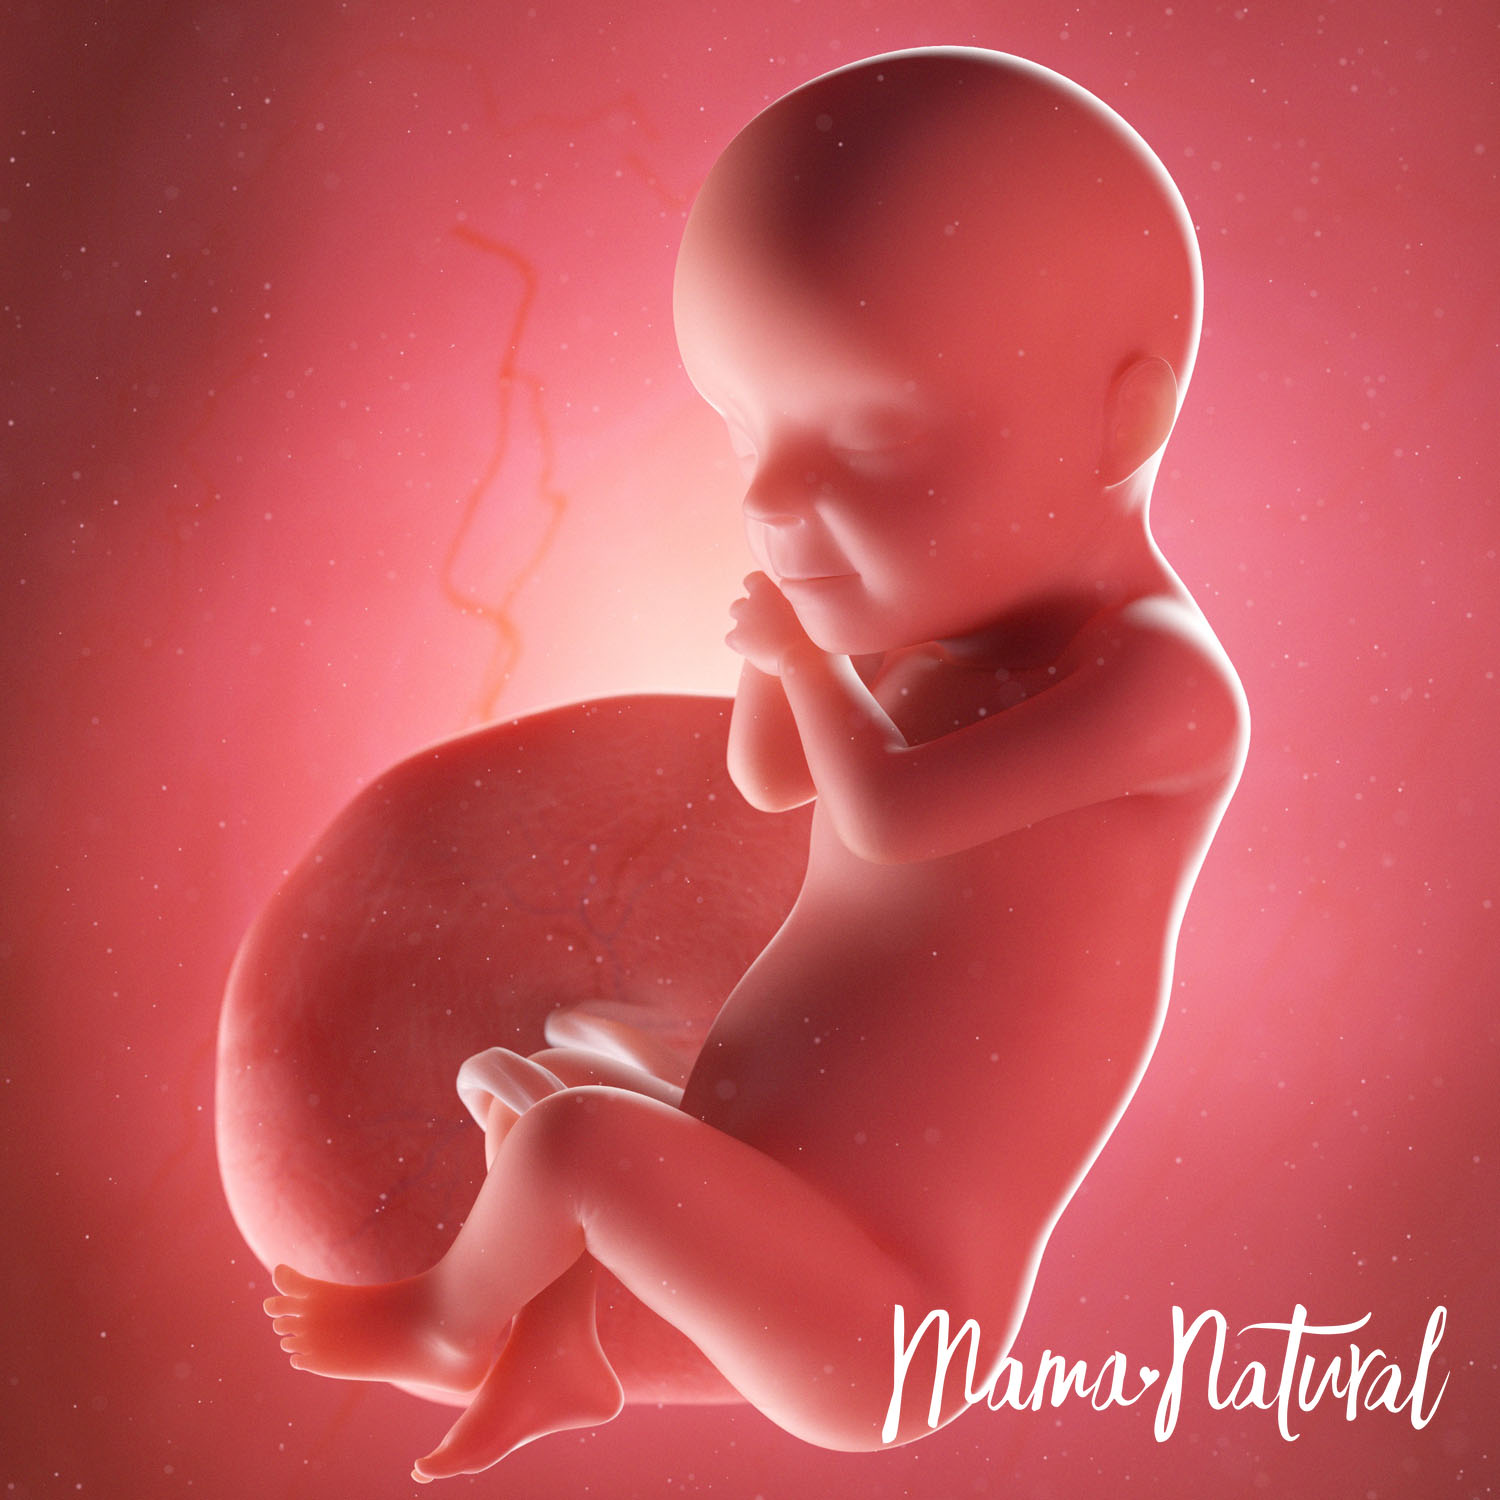 Baby at 30 Weeks Pregnant - Pregnancy Week By Week by Mama Natural